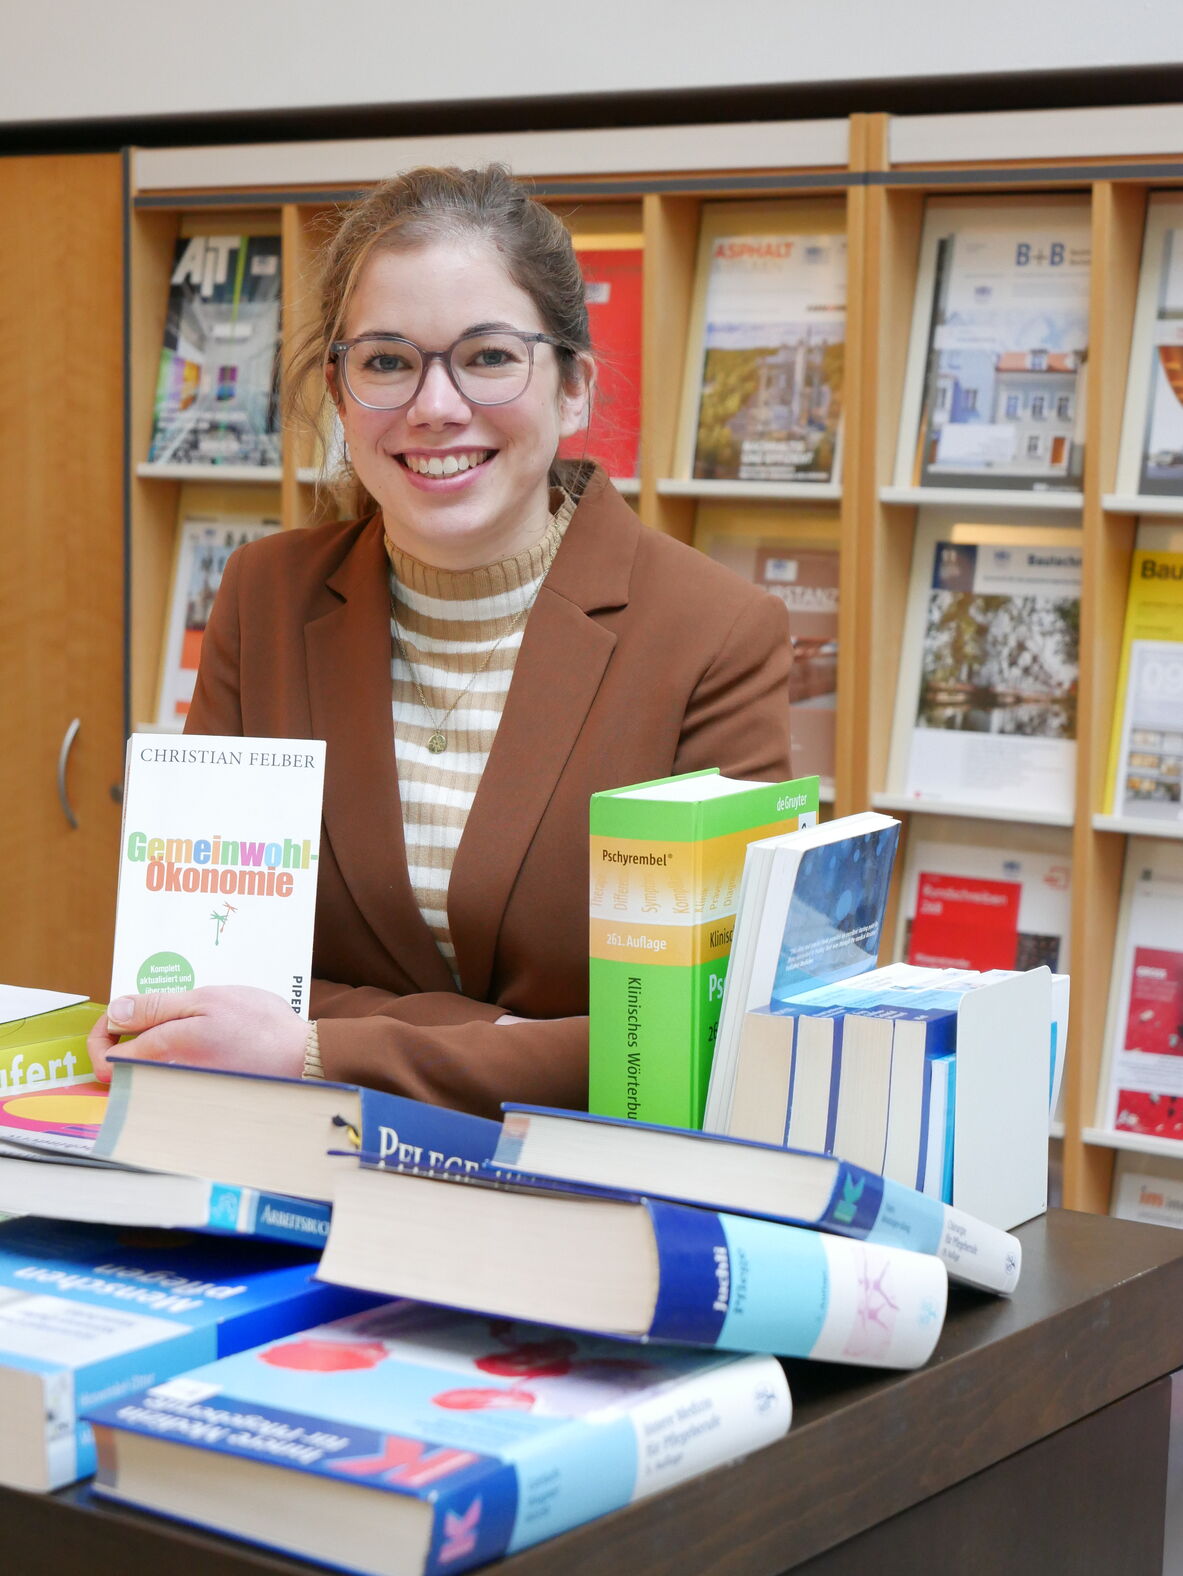 Karina Witten, Wissenschaftliche Mitarbeiterin an der hochschule 21, präsentiert das Buch Gemeinwohl-Ökonomie